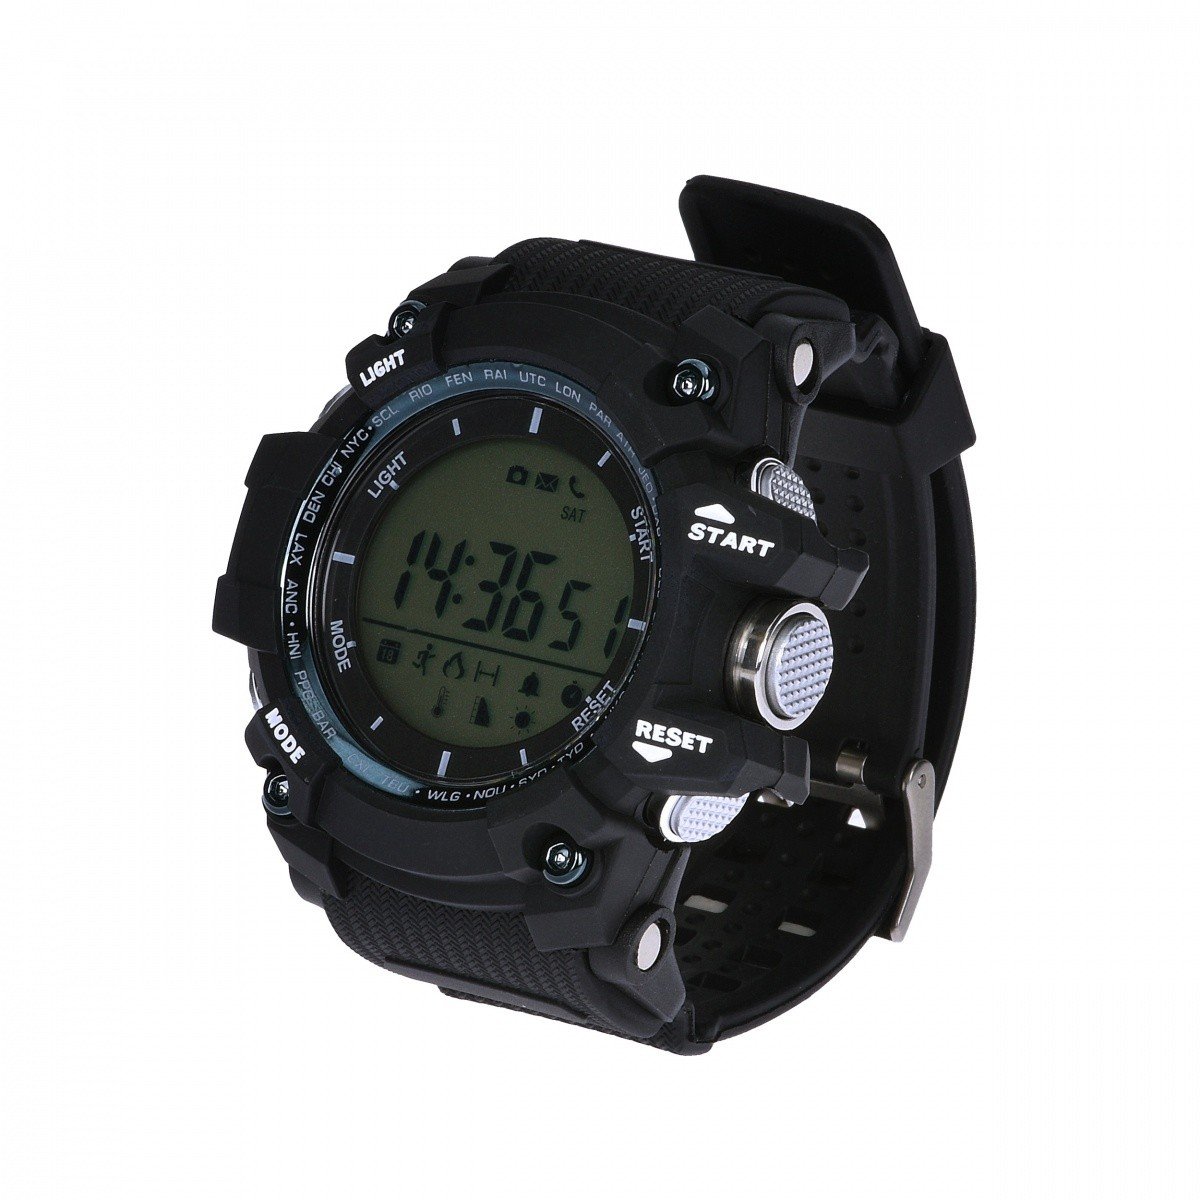 Smartwatch Garett Strong czarny. Smartwatch wodoszczelny do ekstremalnych wyzwań !